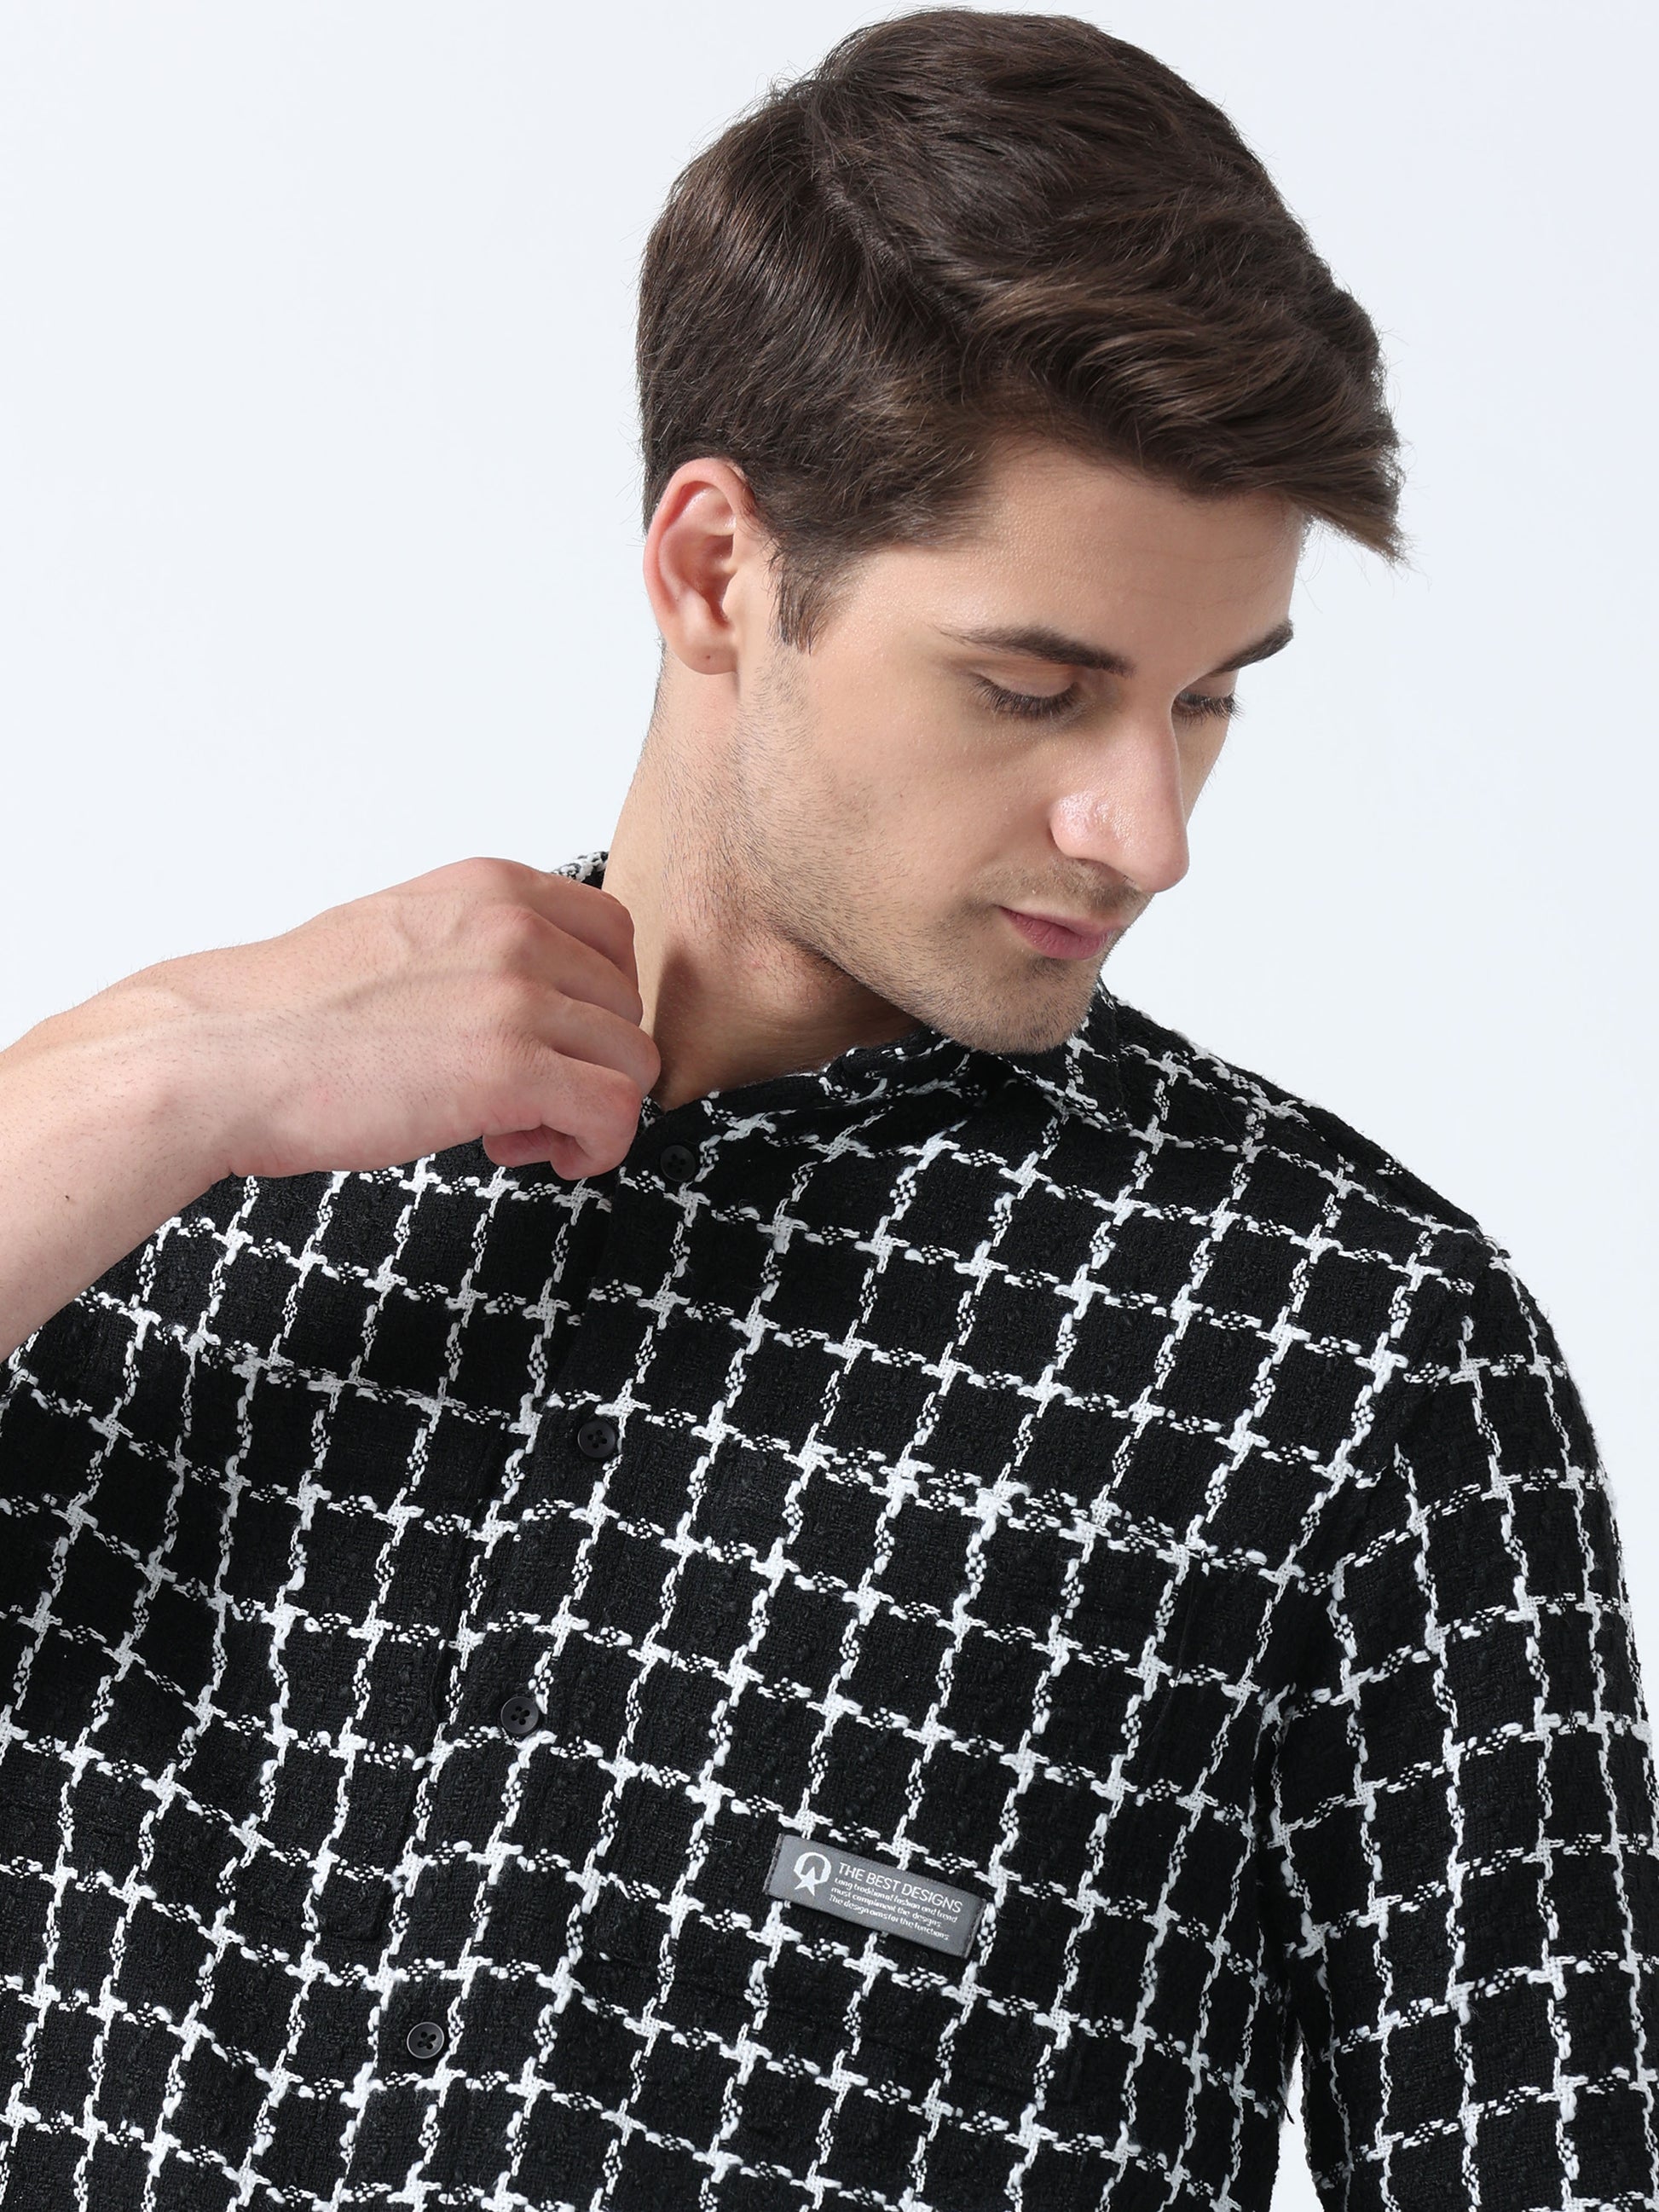  Imported Fabric Black Stylish Men's Full Sleeve Checked shirt